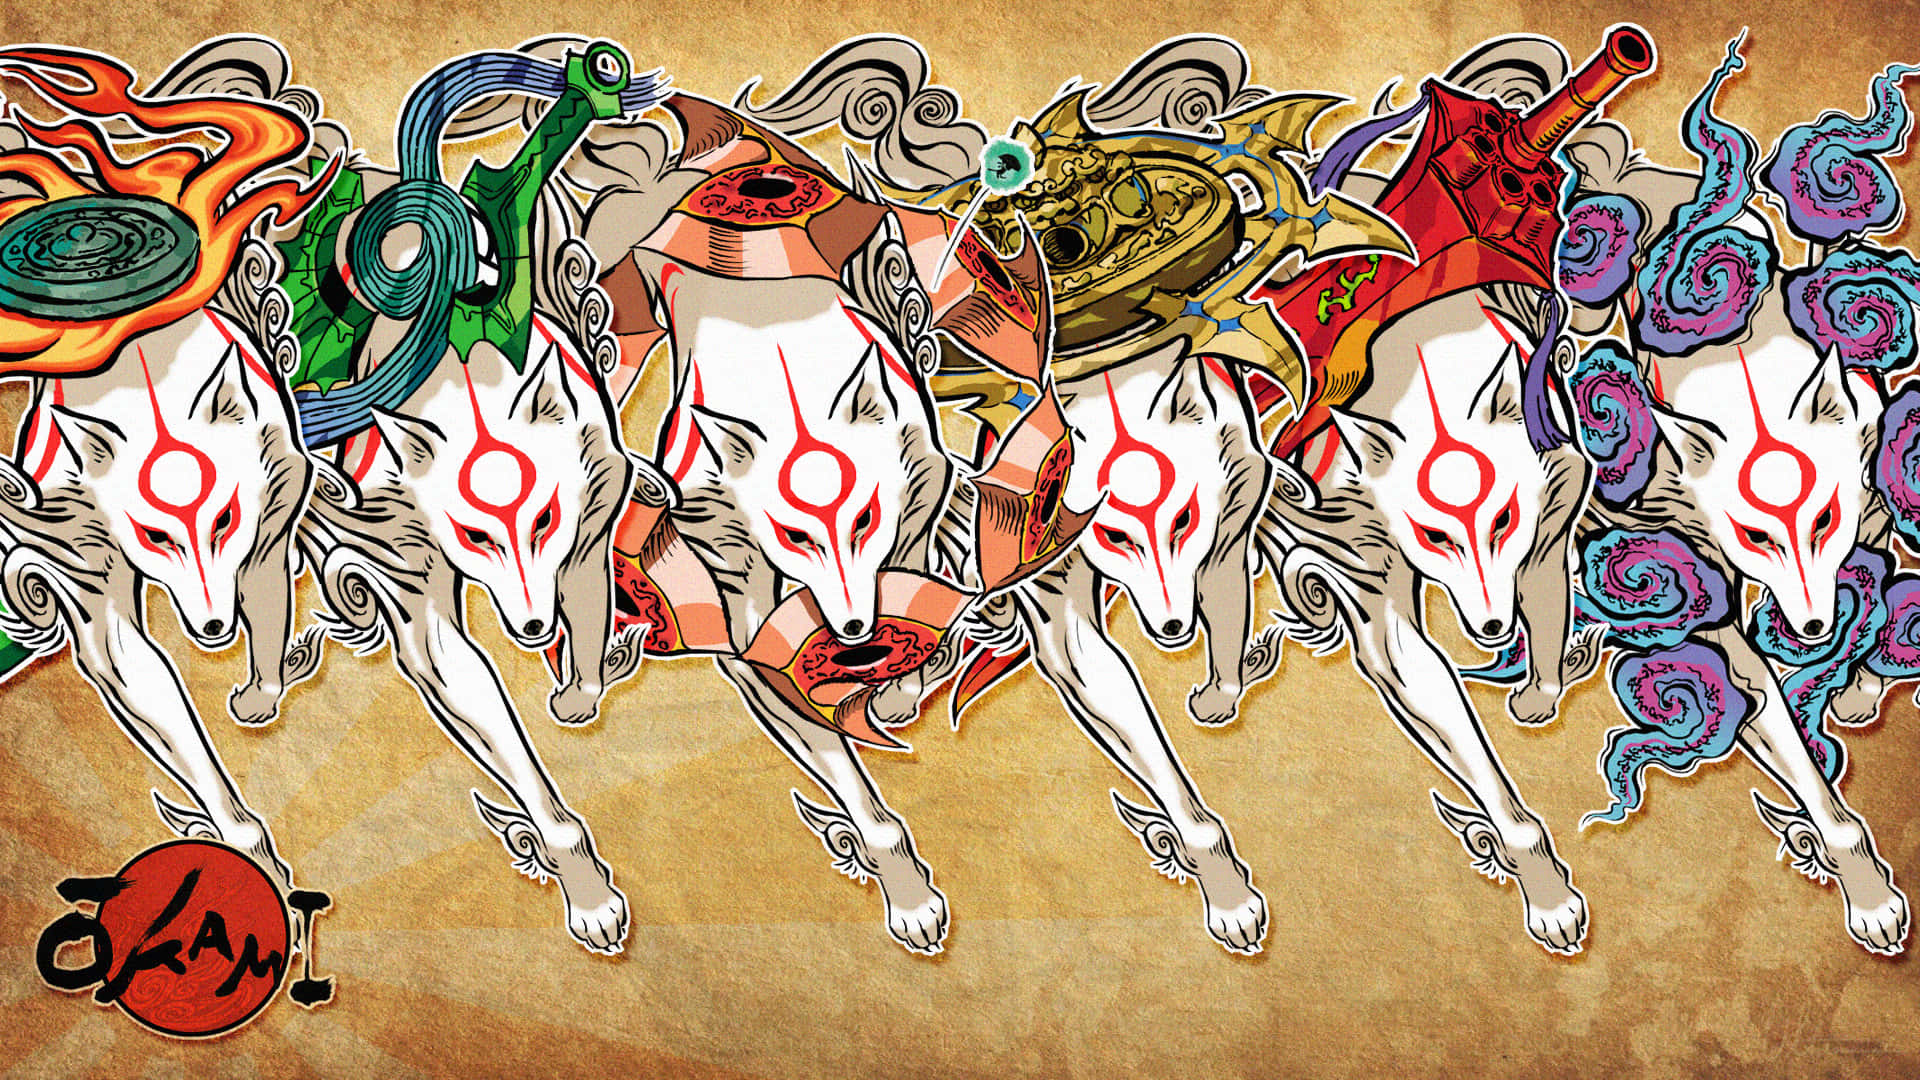 Et gruppe af heste med forskellige designs, der løber tværs over papiret. Wallpaper